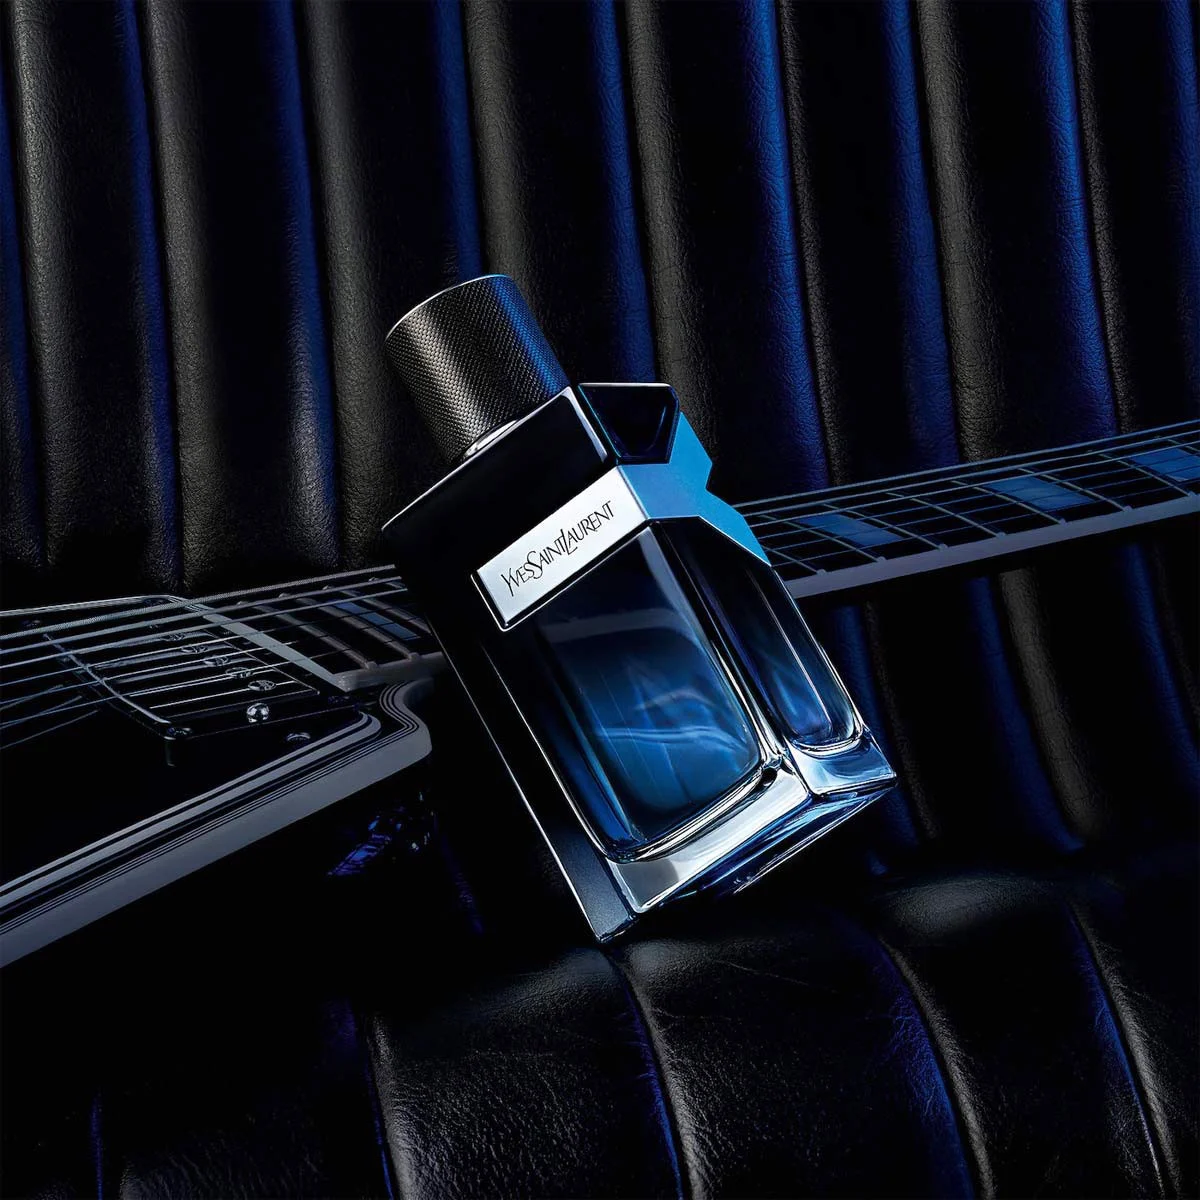 Yves Saint Laurent Y được đánh giá rất cao từ ngoại hình thiết kế đến hương thơm độc đáo